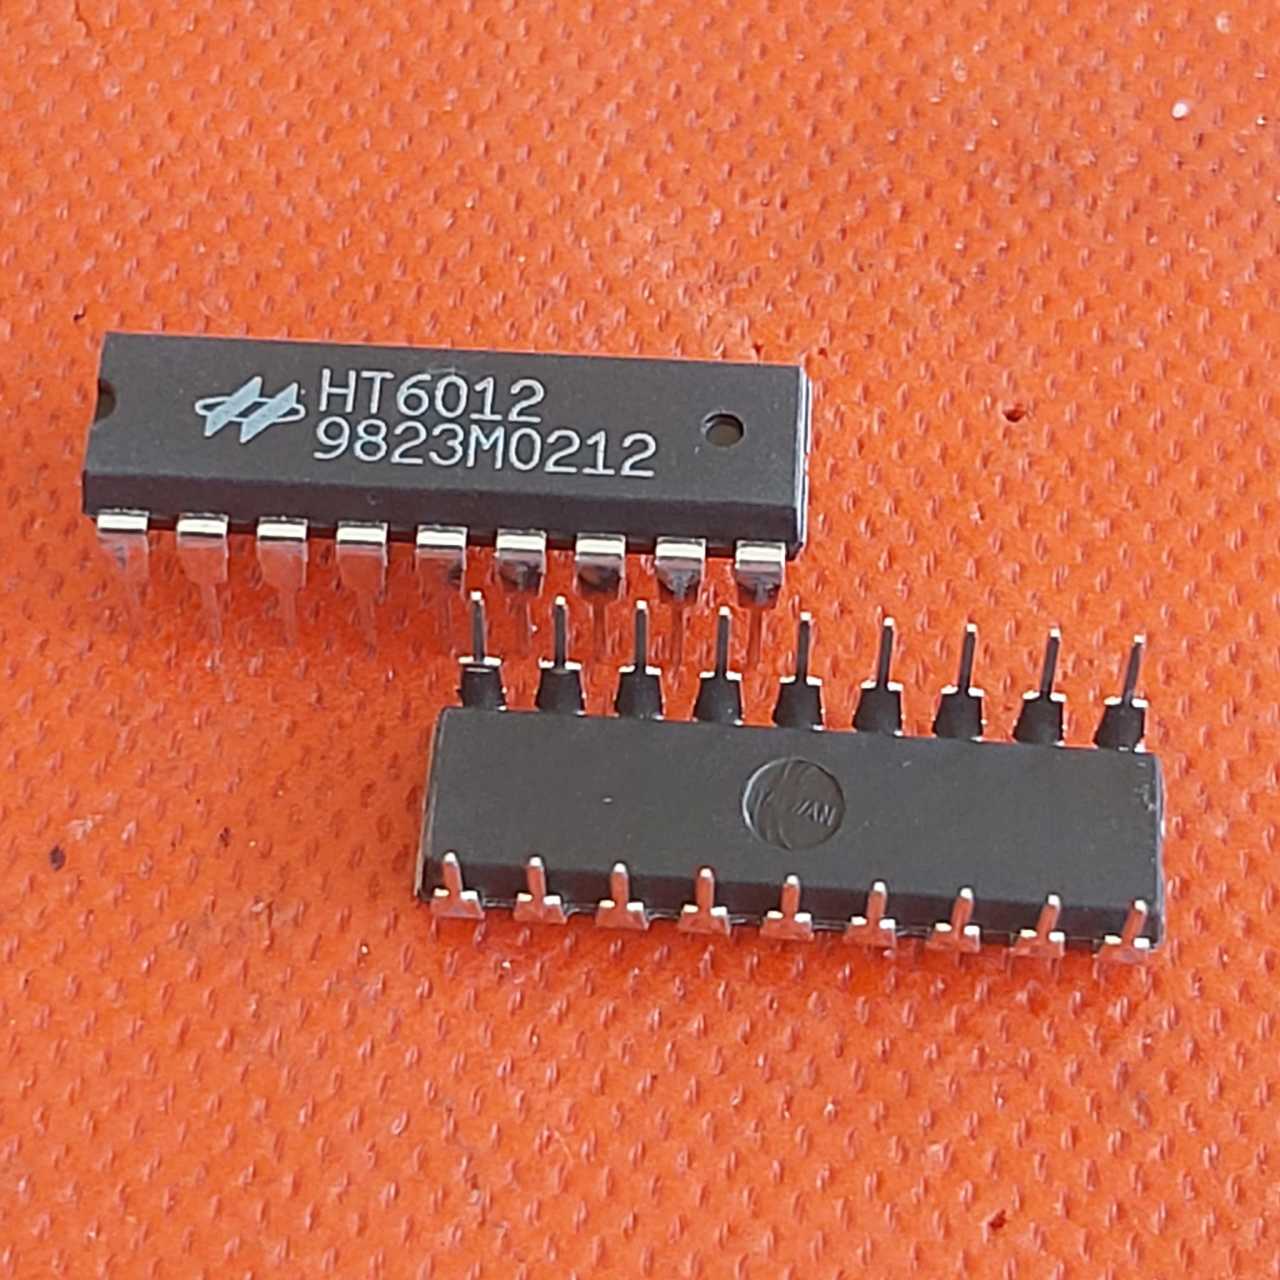 HT6012 312 Series of Encoders